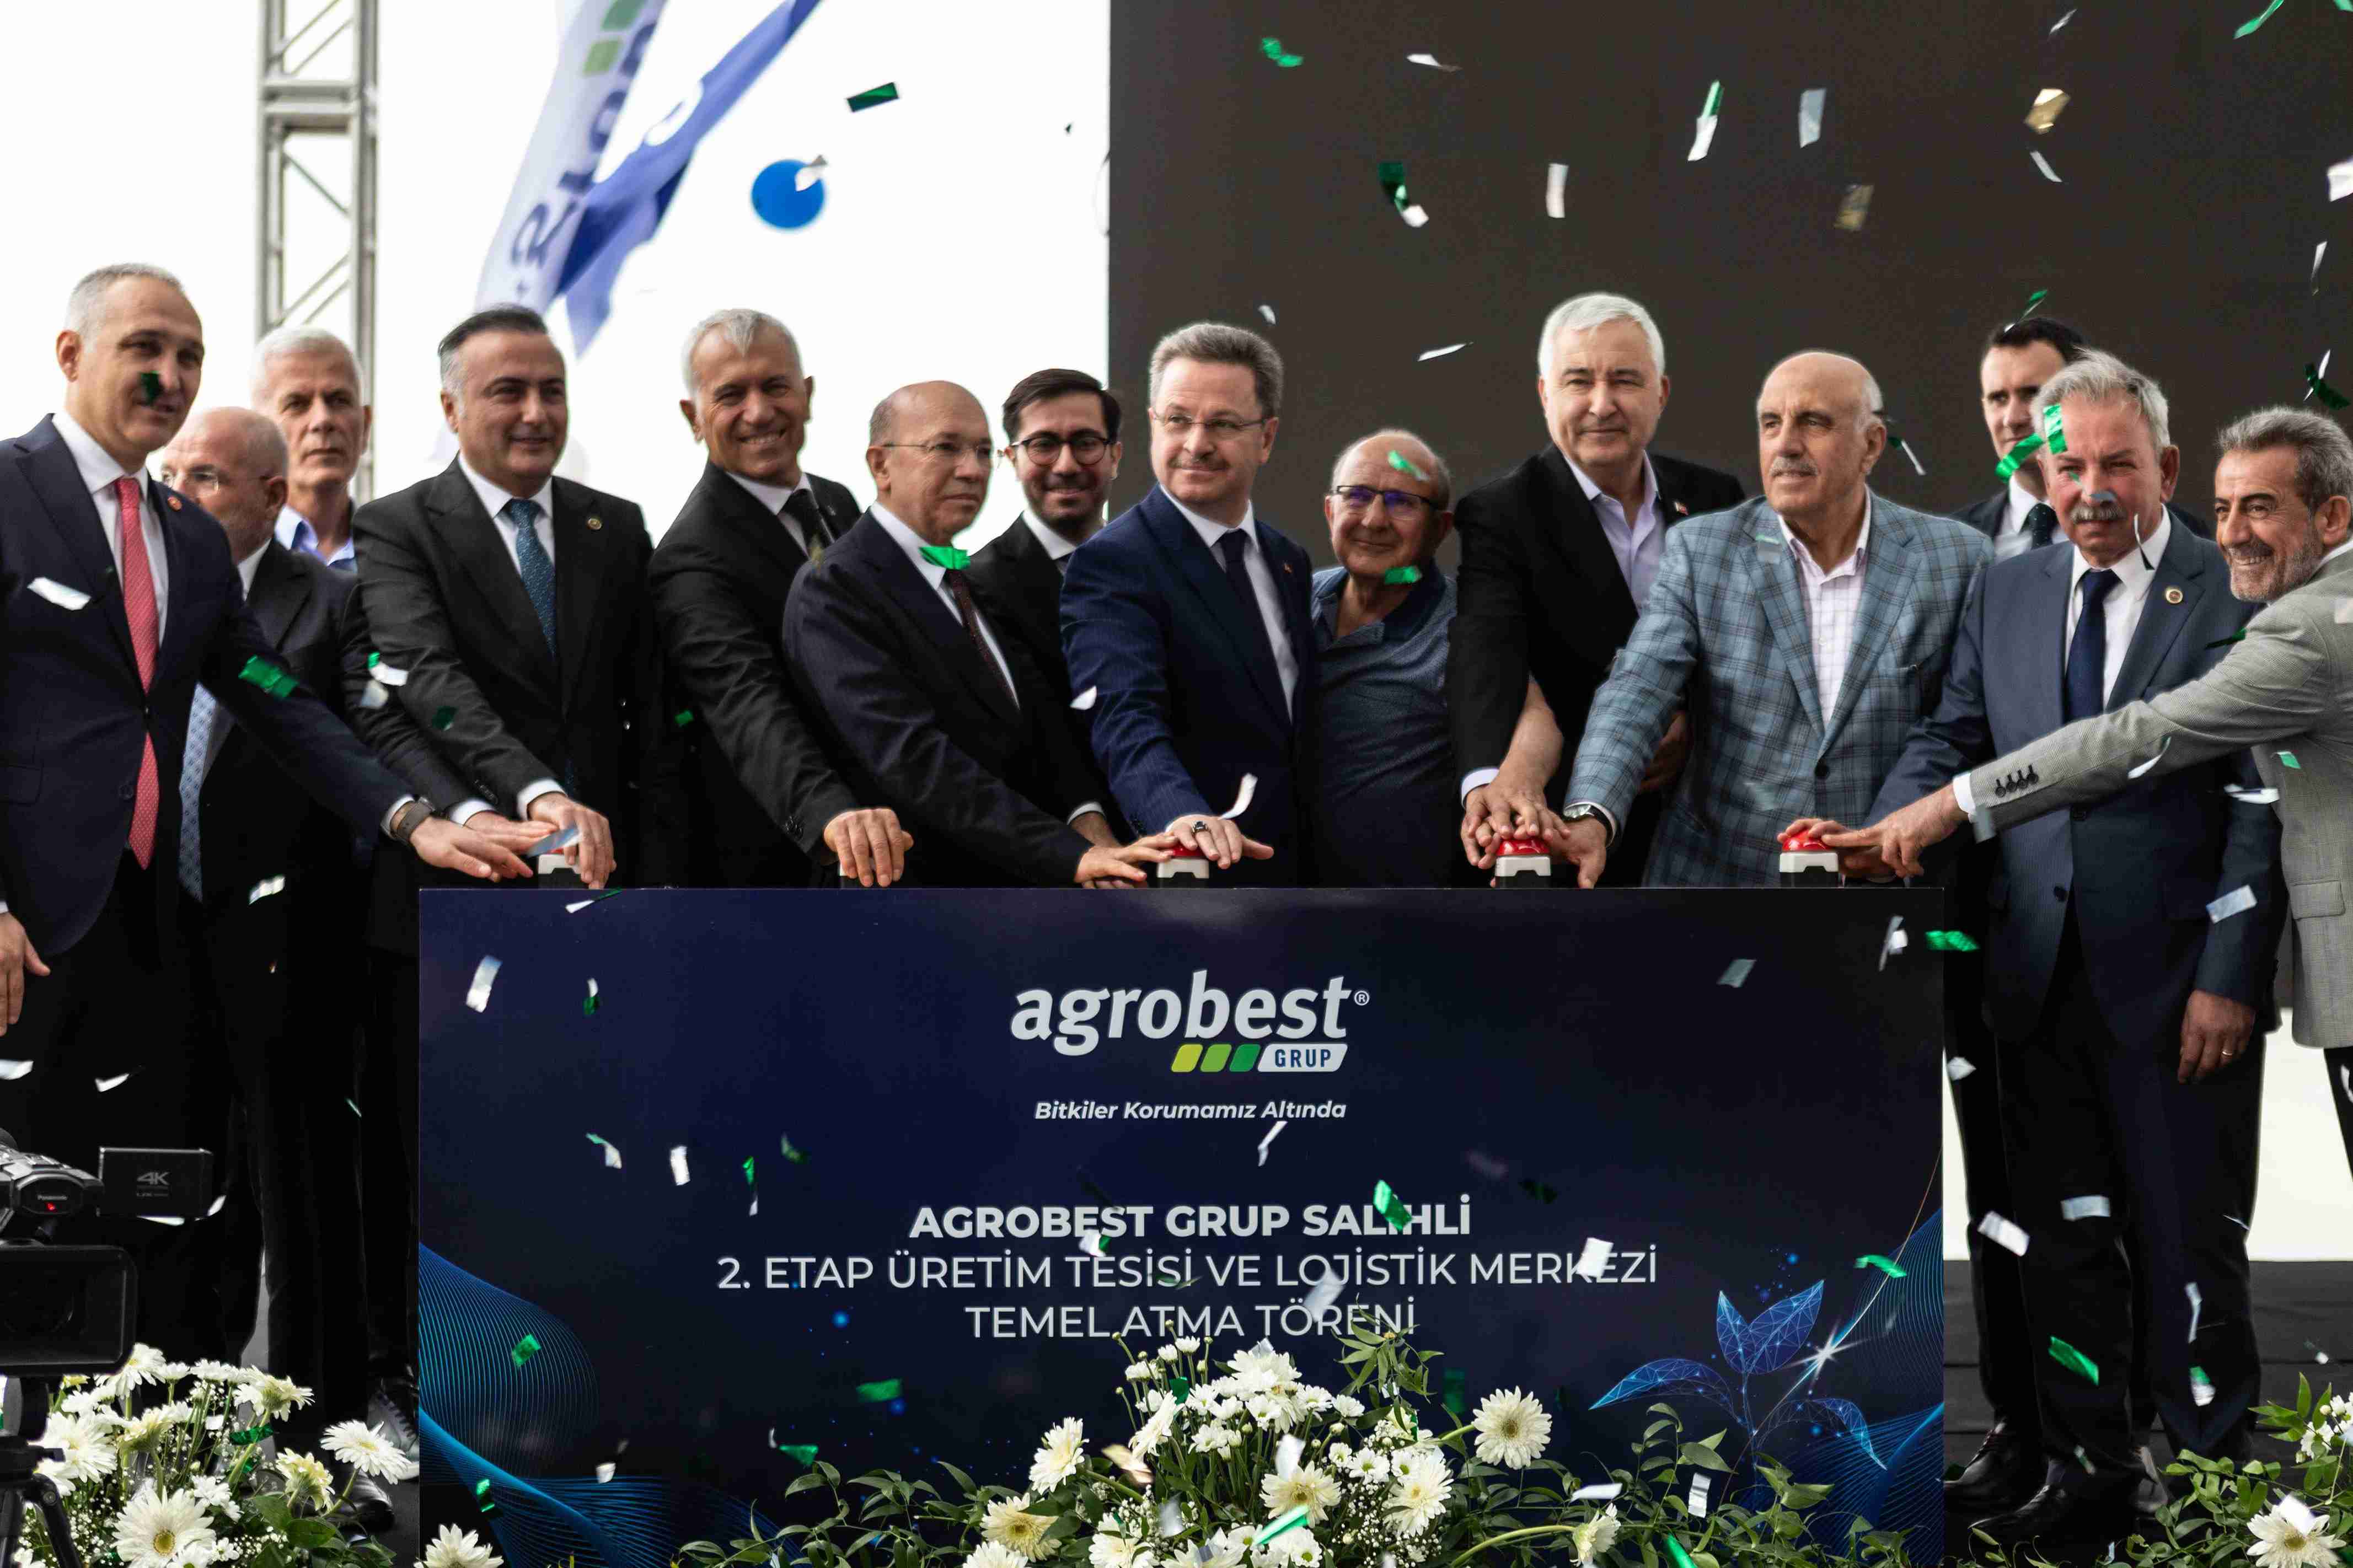 Agrobest Grup, Yeni Yatırımı İçin Temel Atma Töreni Düzenledi